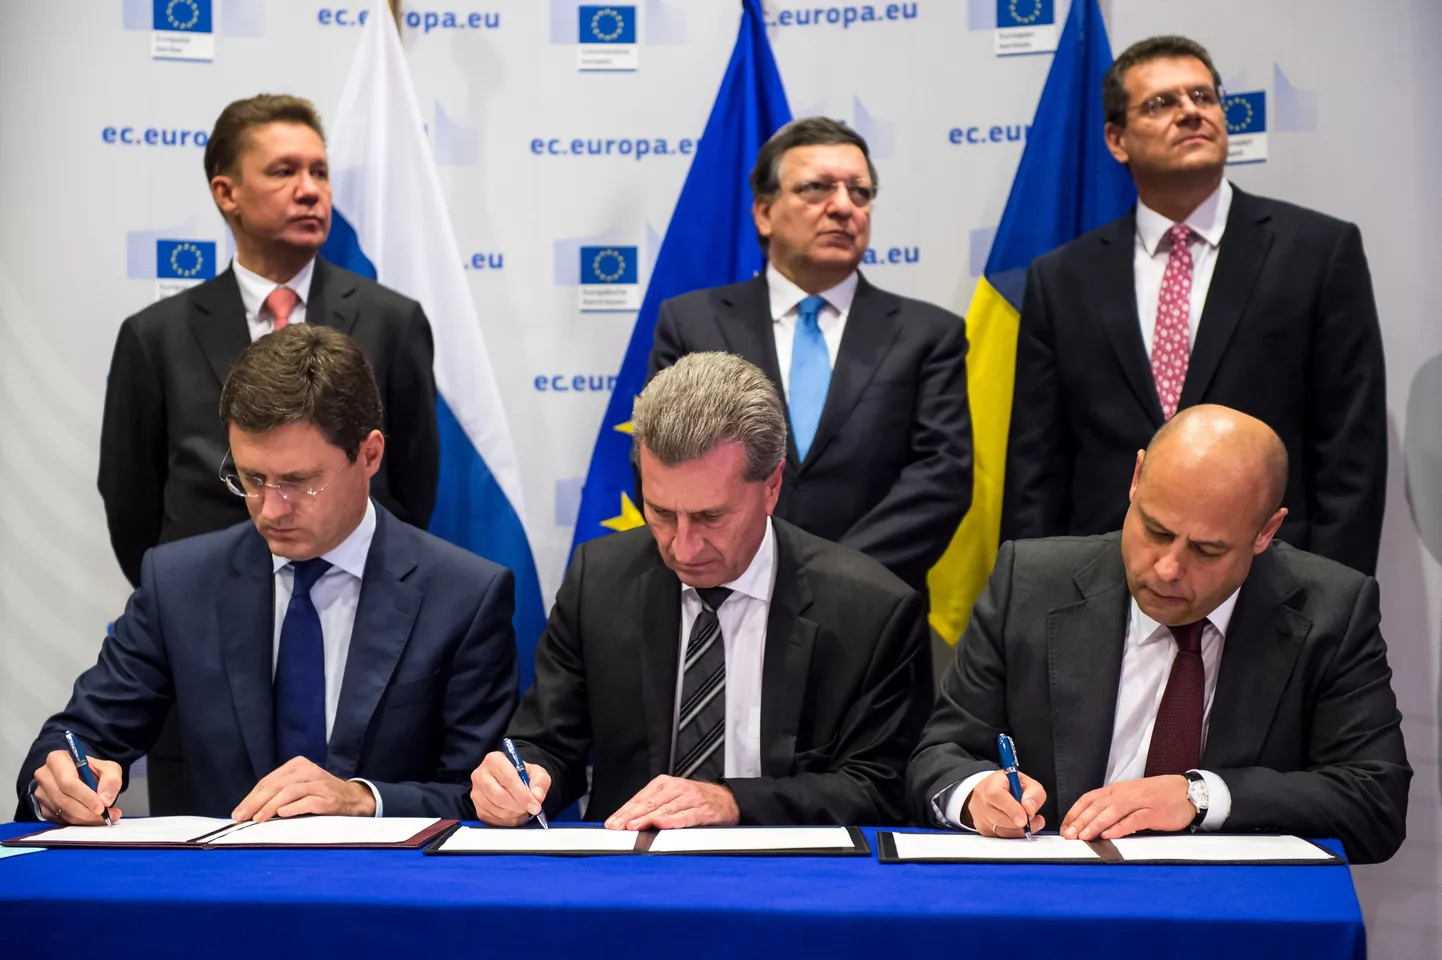 Цена на газ для Украины в ноябре-декабре составит 378 долларов за тысячу кубометров, подтвердили представители российской стороны на переговорах в Брюсселе.